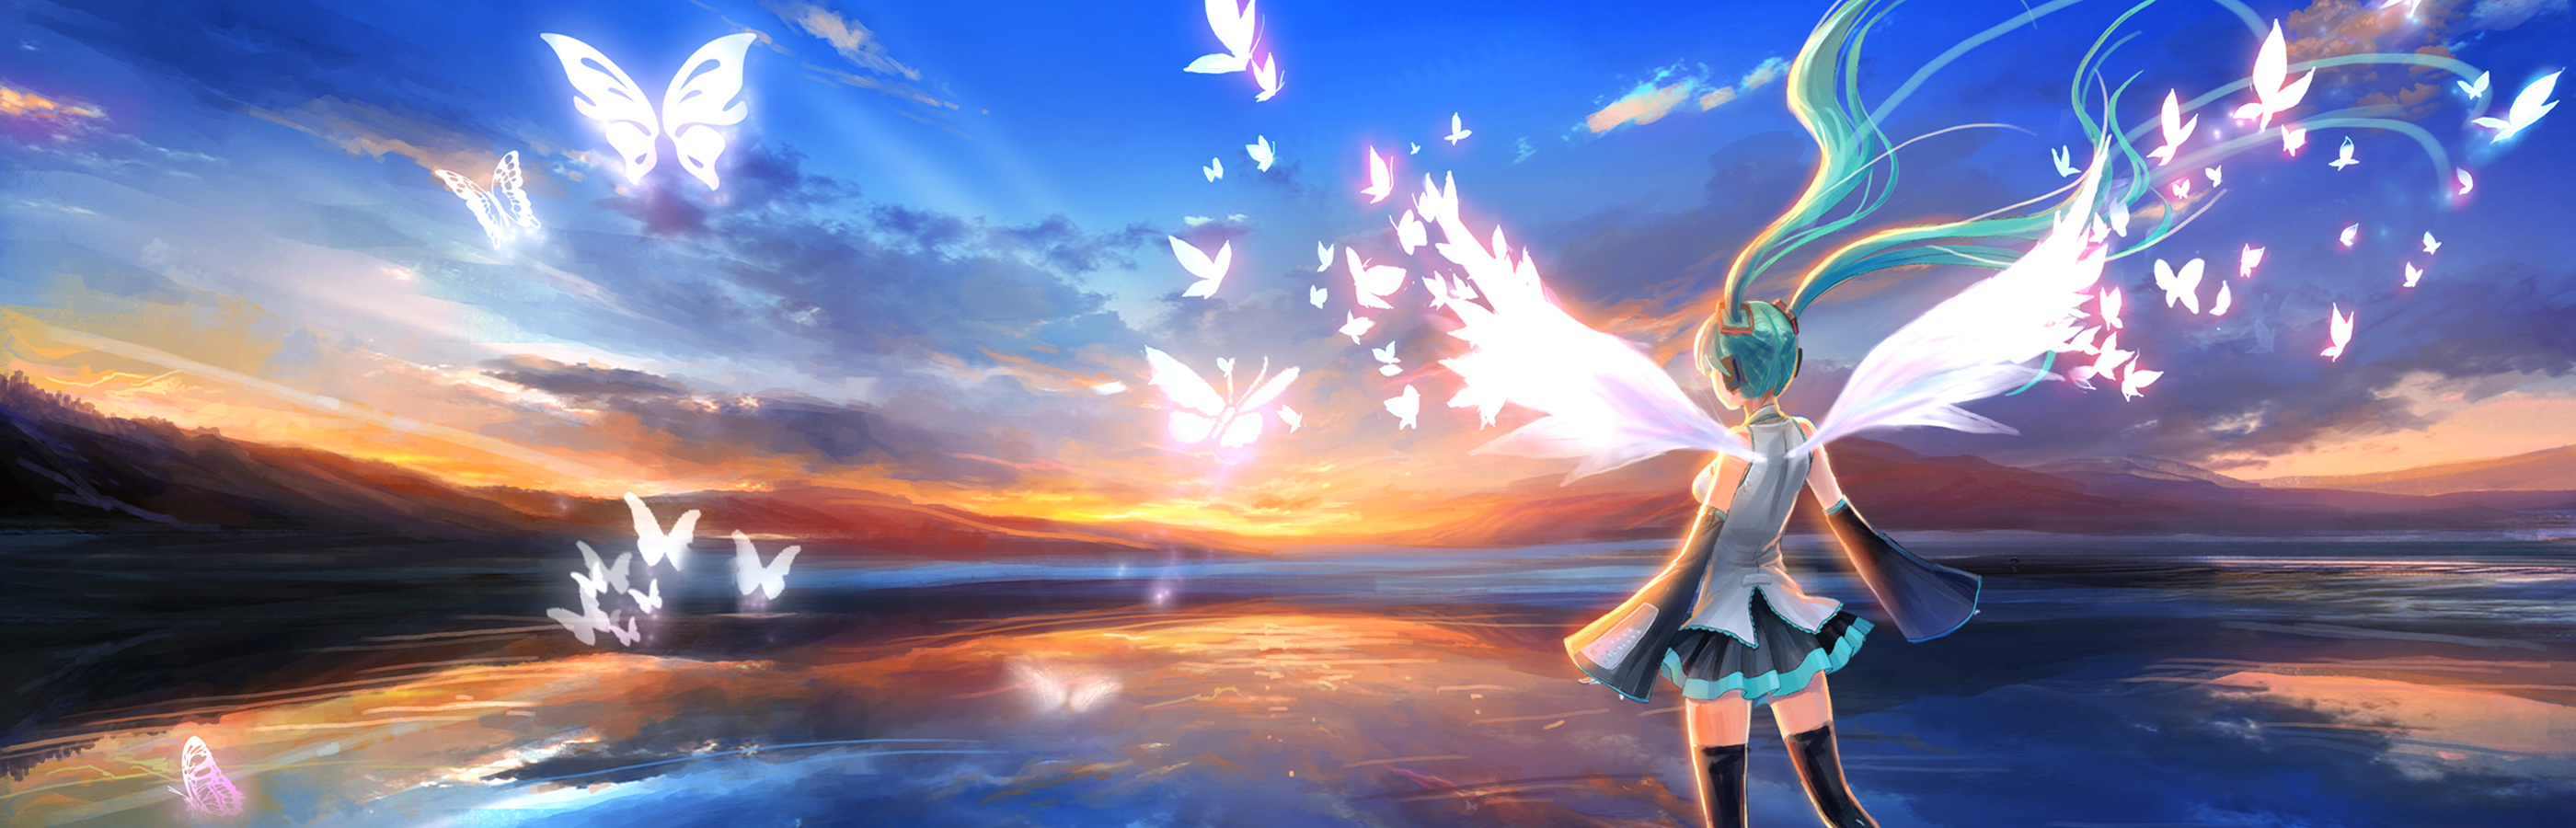 Hình nền Vocaloid: Giai điệu đầy mê hoặc và những hình ảnh tuyệt đẹp luôn là điều mà Vocaloid đem lại cho chúng ta. Với hình nền Vocaloid, bạn sẽ có thể chìm đắm vào thế giới của các nhân vật lạ mắt nhưng cũng đầy màu sắc. Hình nền sẽ thực sự làm nổi bật màn hình của bạn và giúp bạn tận hưởng những khoảnh khắc thú vị.